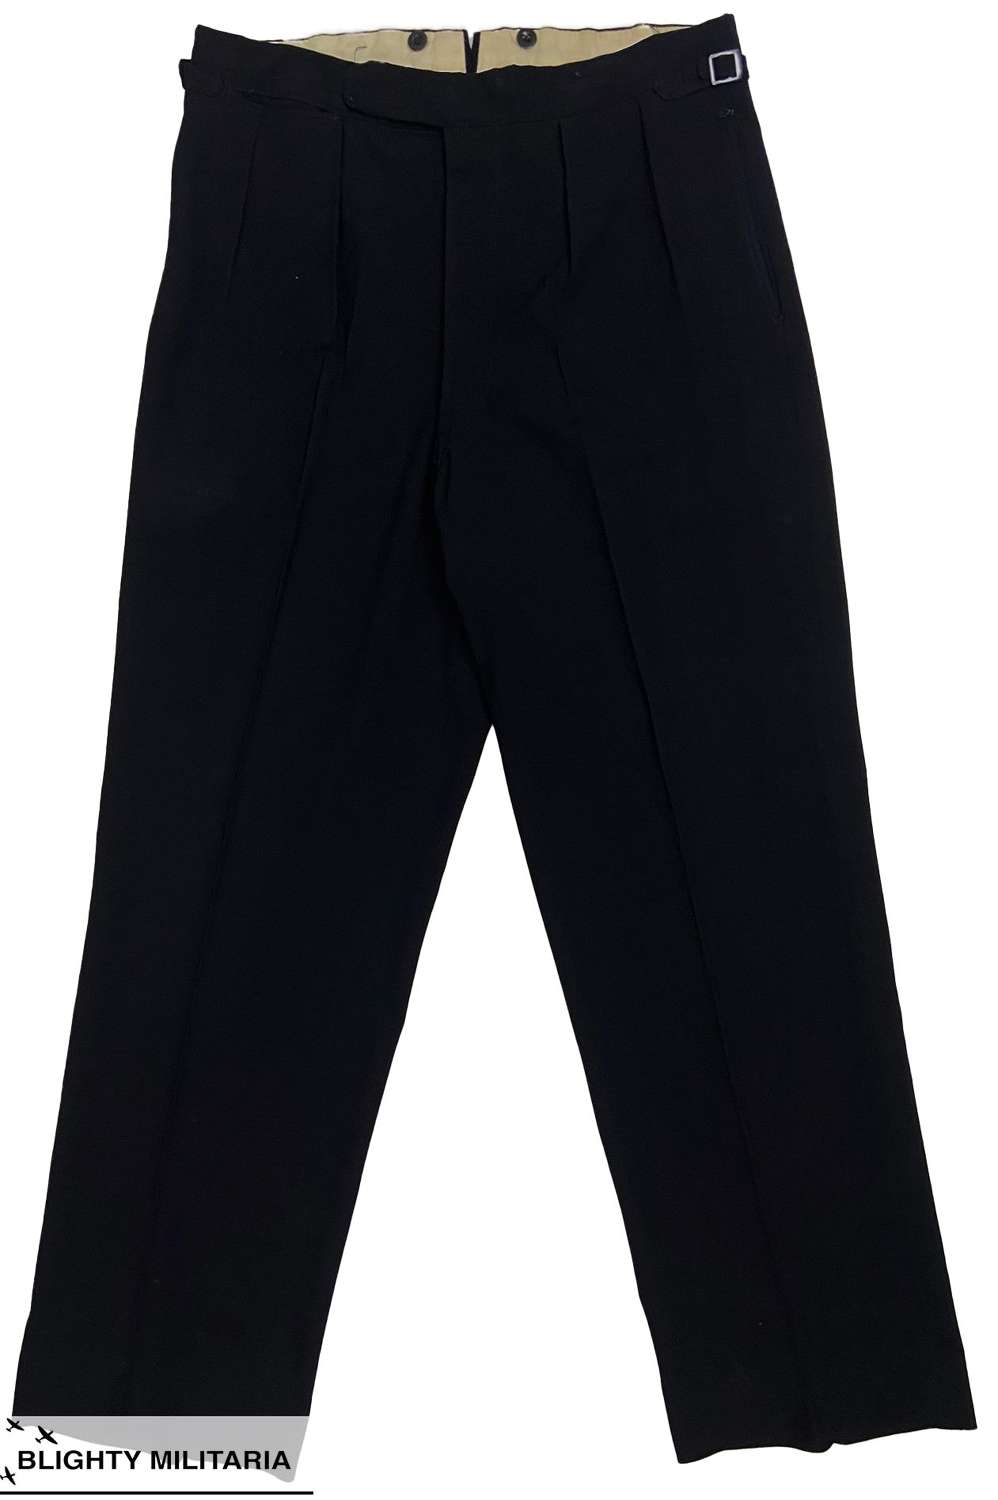 Original 1950s Men's Black Trousers - Size 35 x 32.5